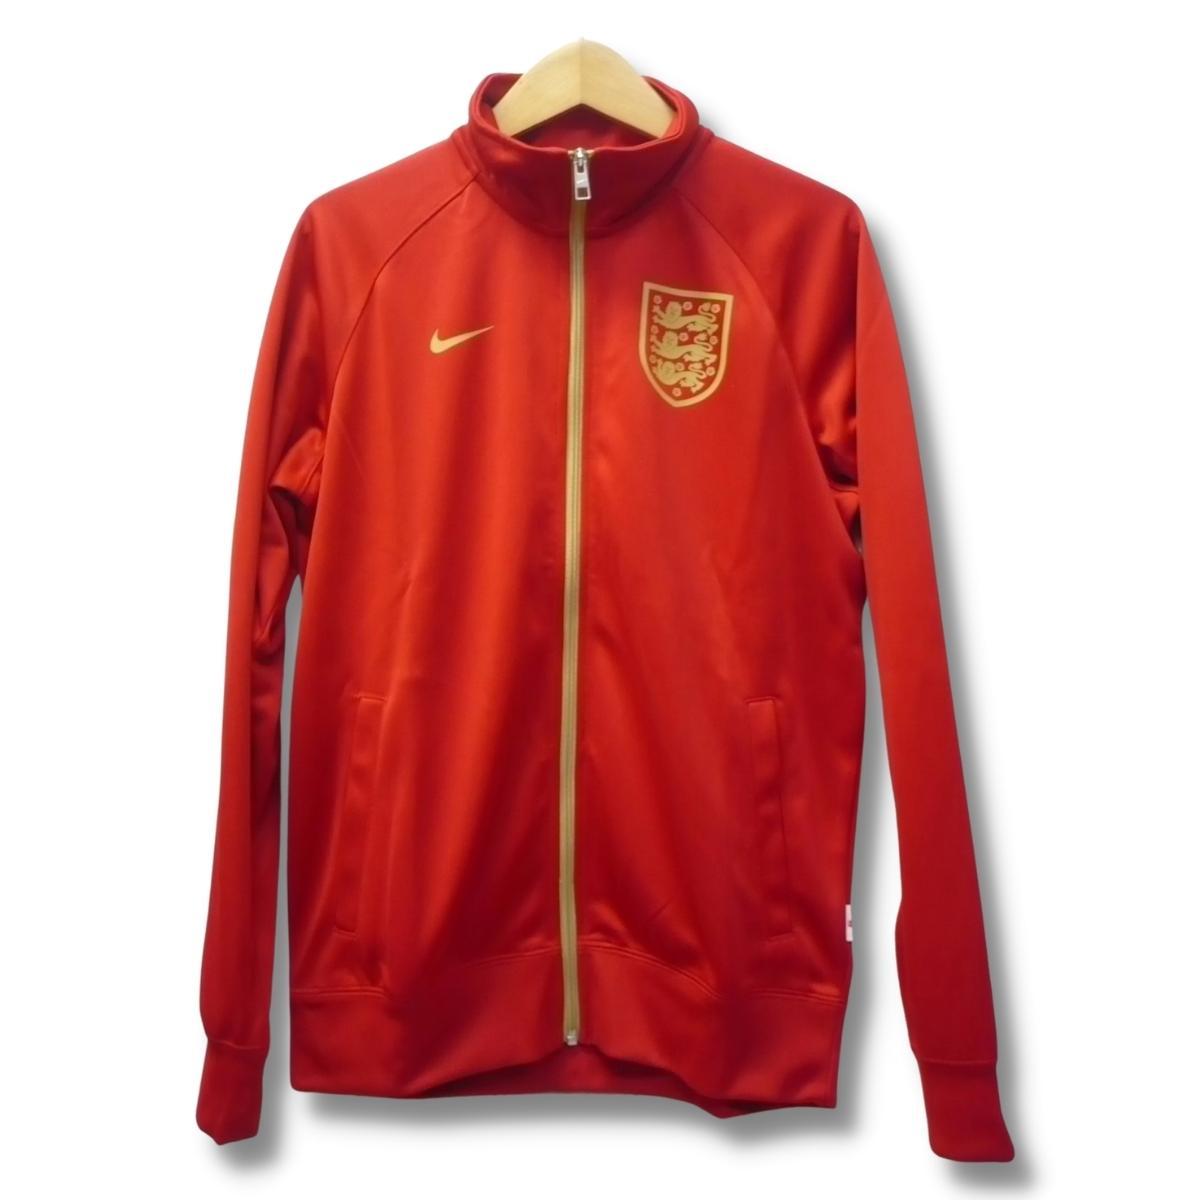 即決☆ナイキ イングランド トラックジャケット RED/Lサイズ 送料無料 国内正規品 ジャージ 英国 サッカー レッド 赤